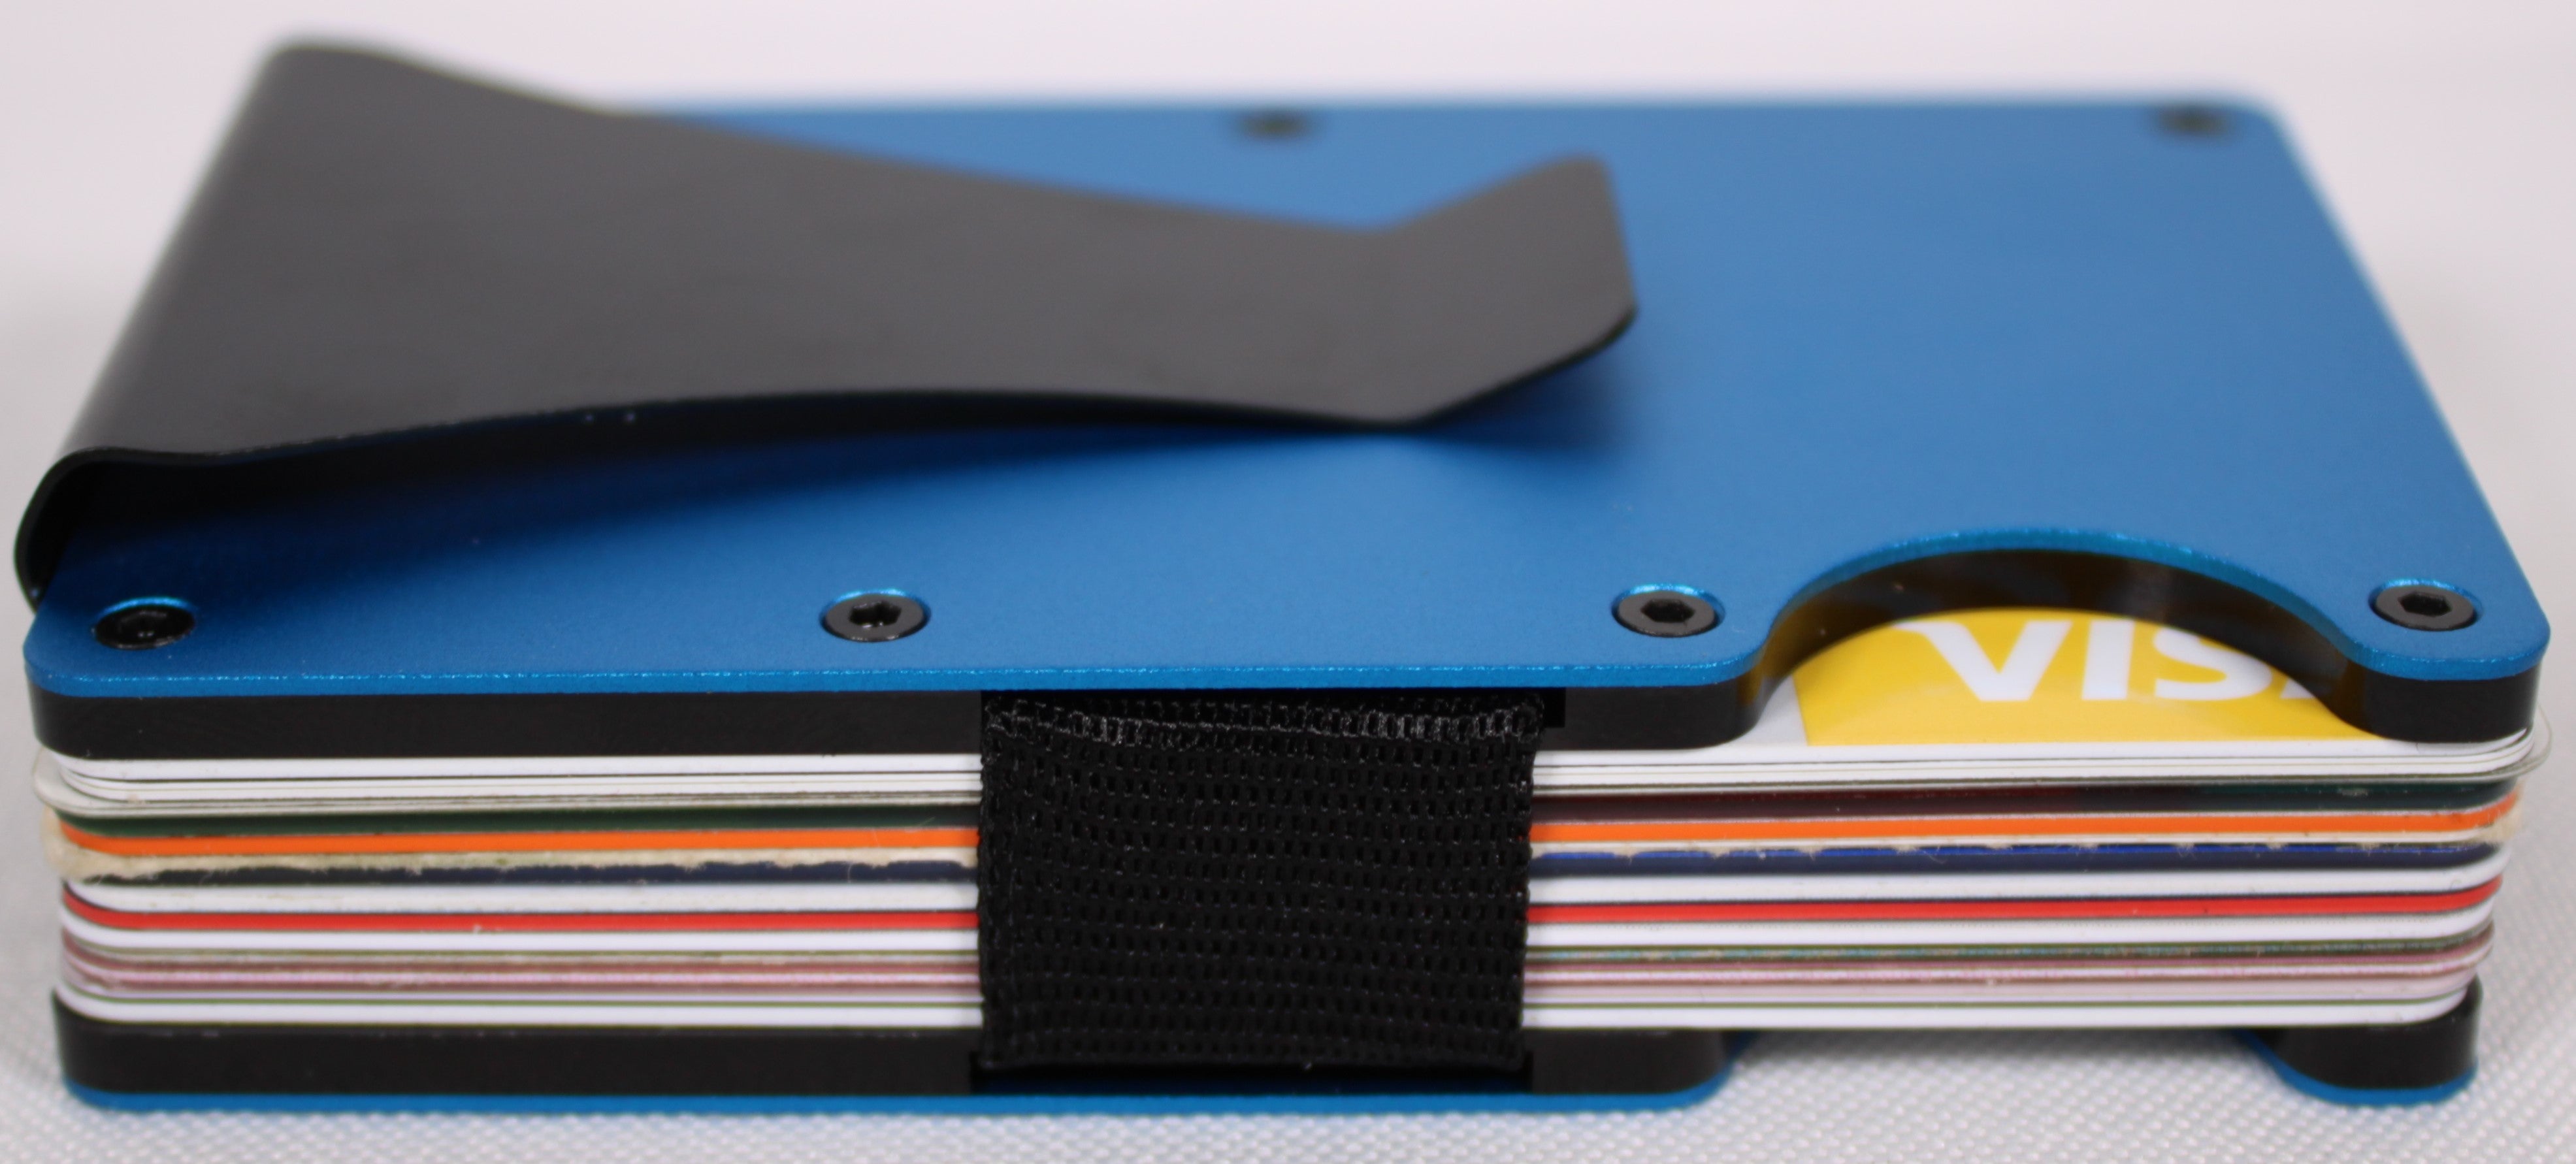 Laser Engraved RFID Blocking Minimalist Wallet W/Money Clip